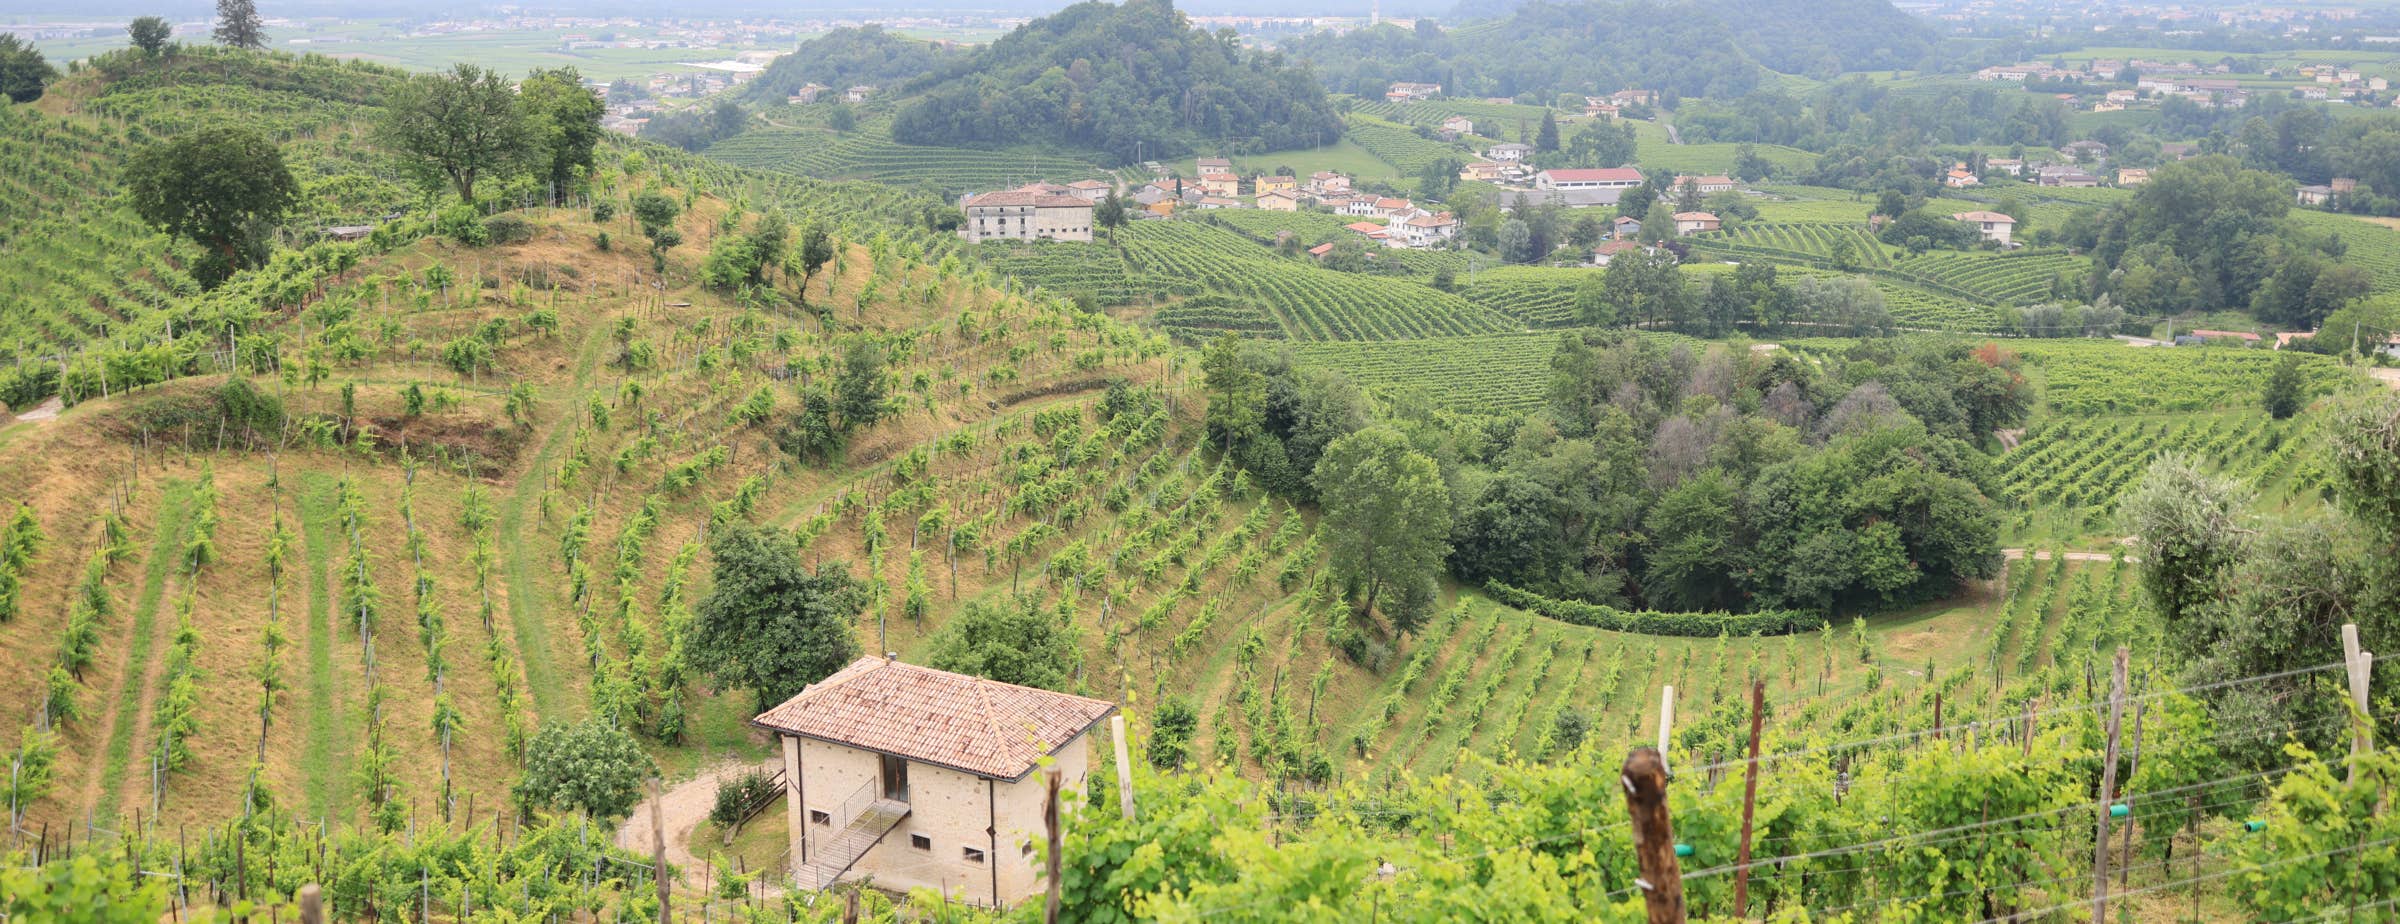 Na sliki so vinogradi na hribovitem terenu z osamljenimi hišicami in majhnimi skupinami stavb med vinogradniškimi parcelami.